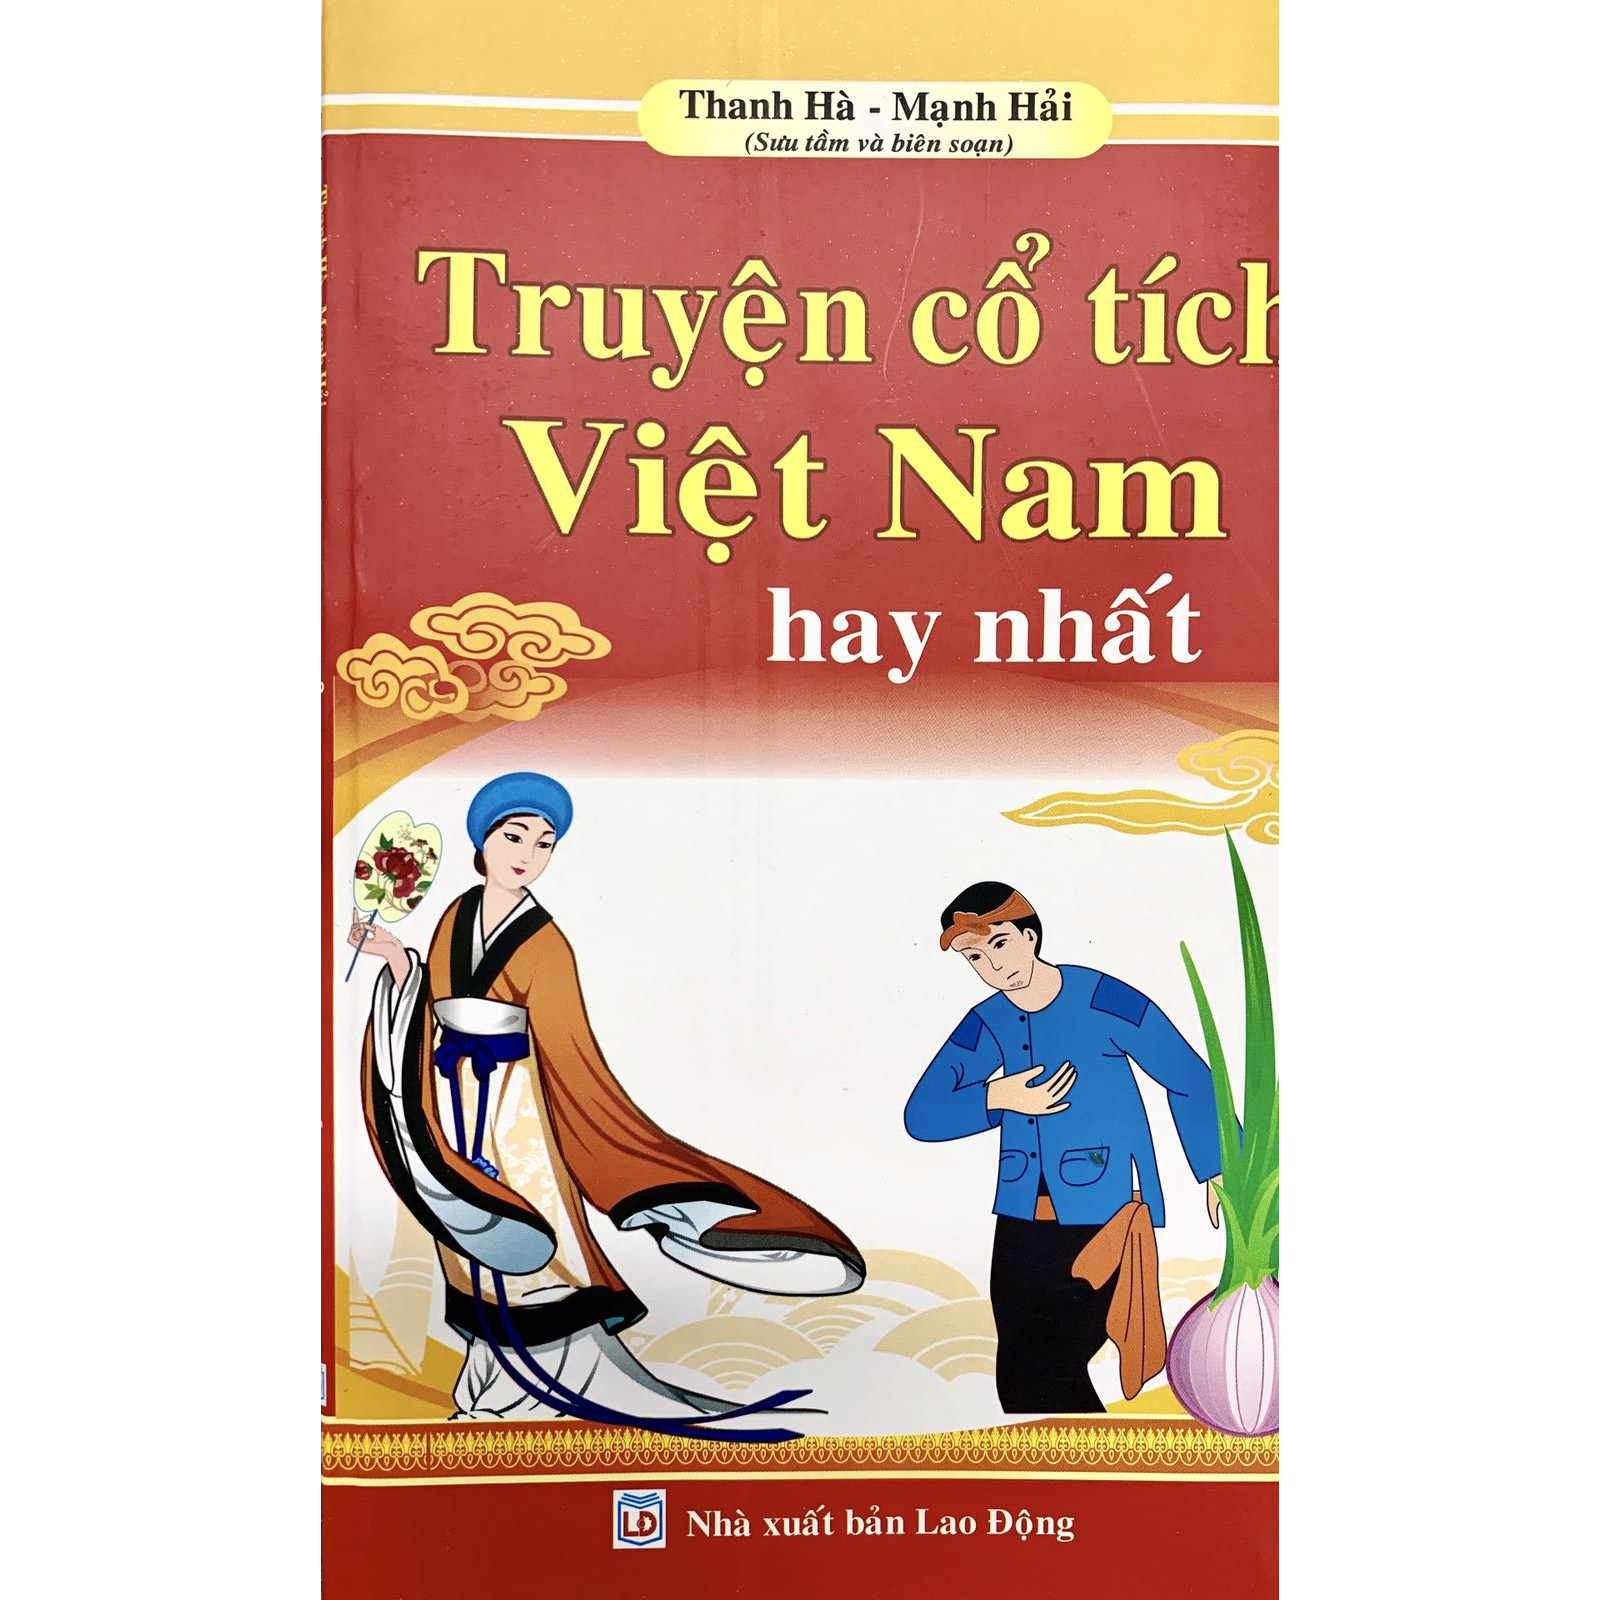 Truyện cổ tích Việt Nam hay nhất - Thanh Hà &amp; Mạnh Hải ( Sưu tầm và biên soạn)